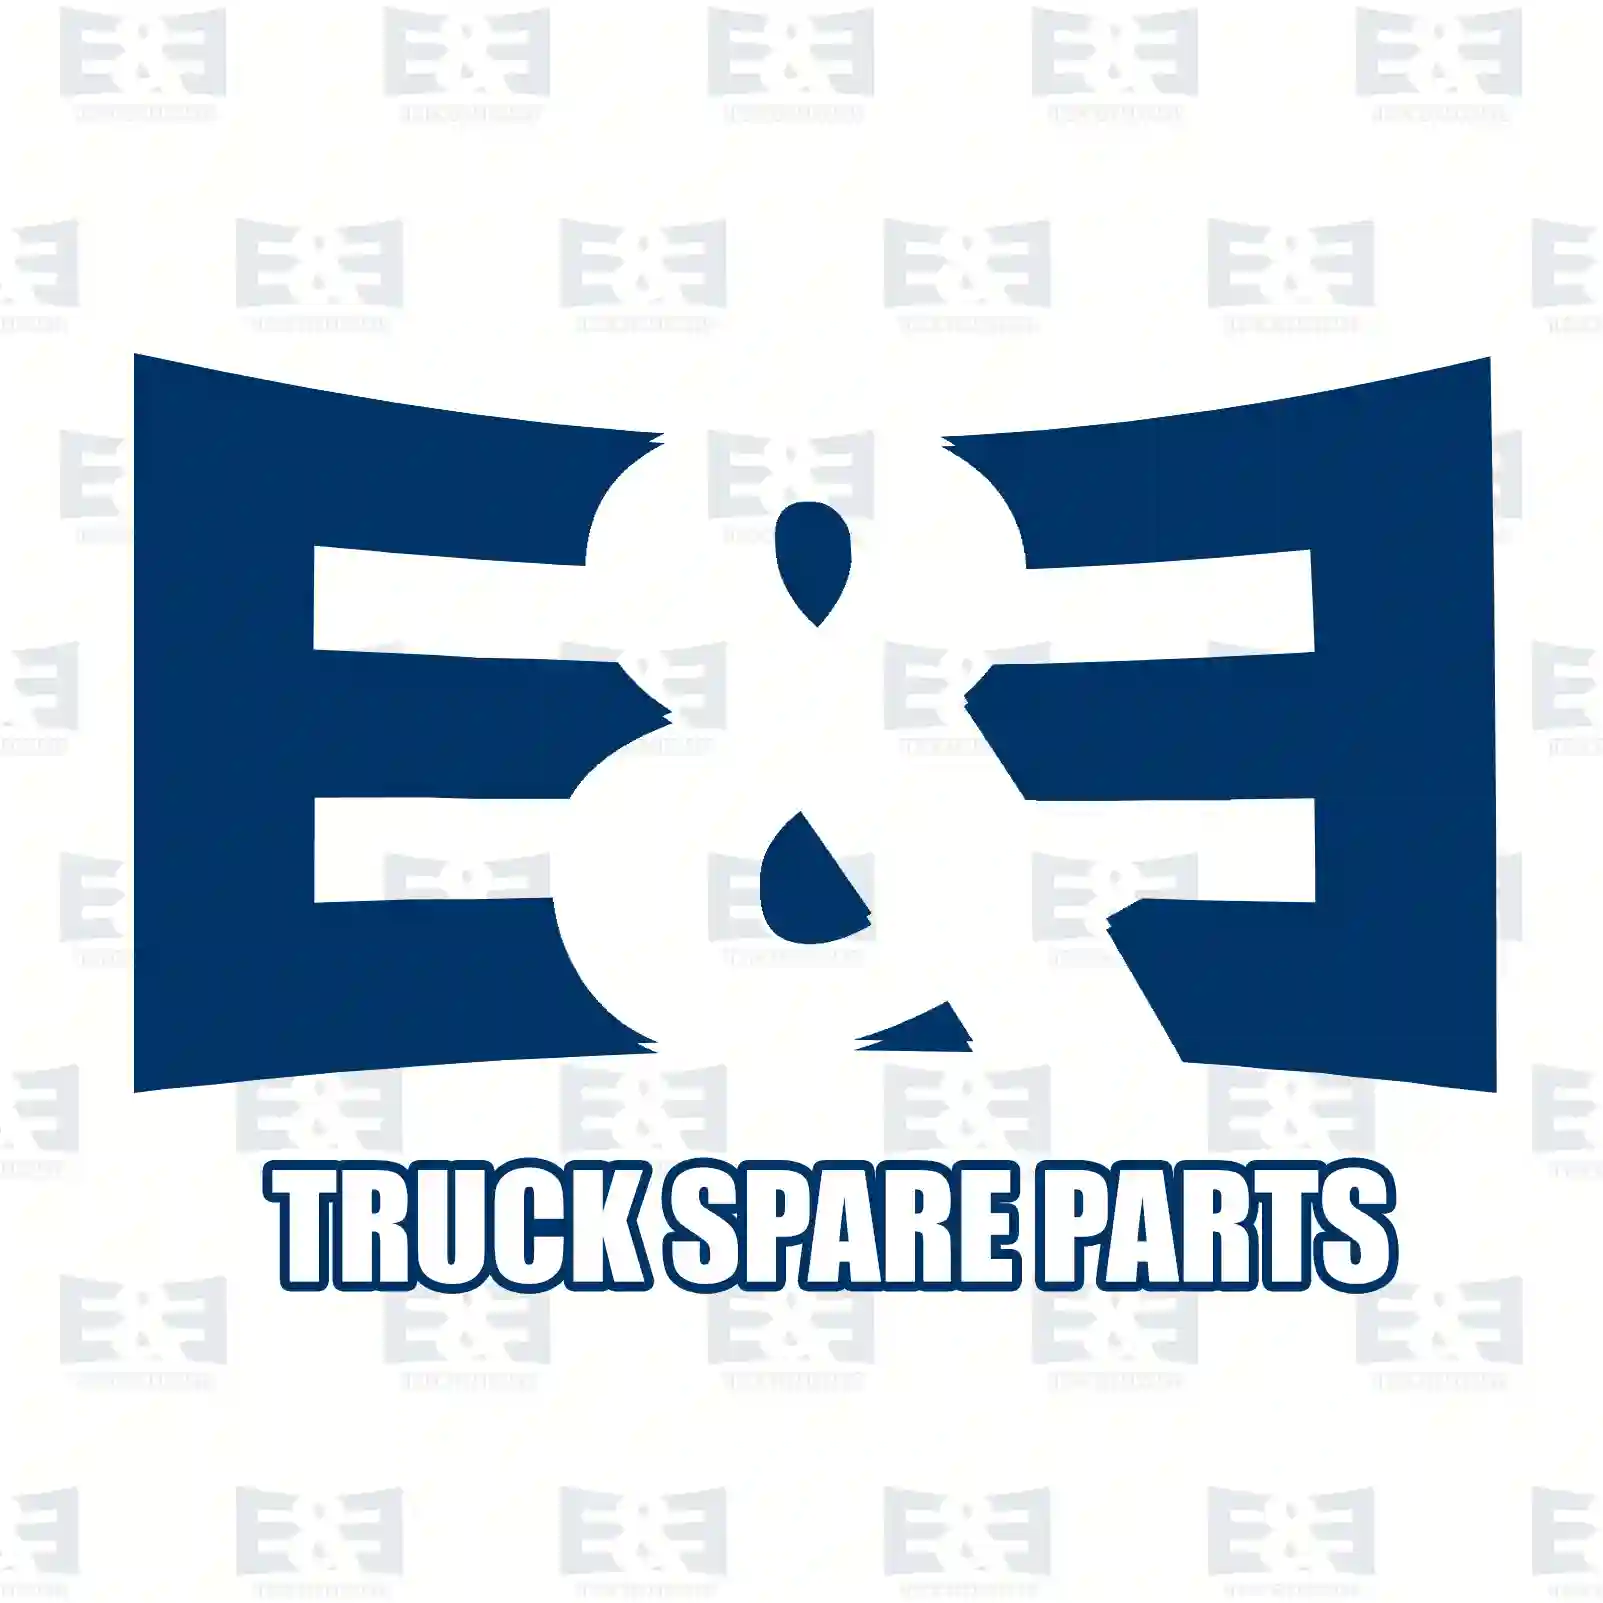 Control arm, right, 2E2279963, 93197215, 4419216, 8200688875 ||  2E2279963 E&E Truck Spare Parts | Truck Spare Parts, Auotomotive Spare Parts Control arm, right, 2E2279963, 93197215, 4419216, 8200688875 ||  2E2279963 E&E Truck Spare Parts | Truck Spare Parts, Auotomotive Spare Parts